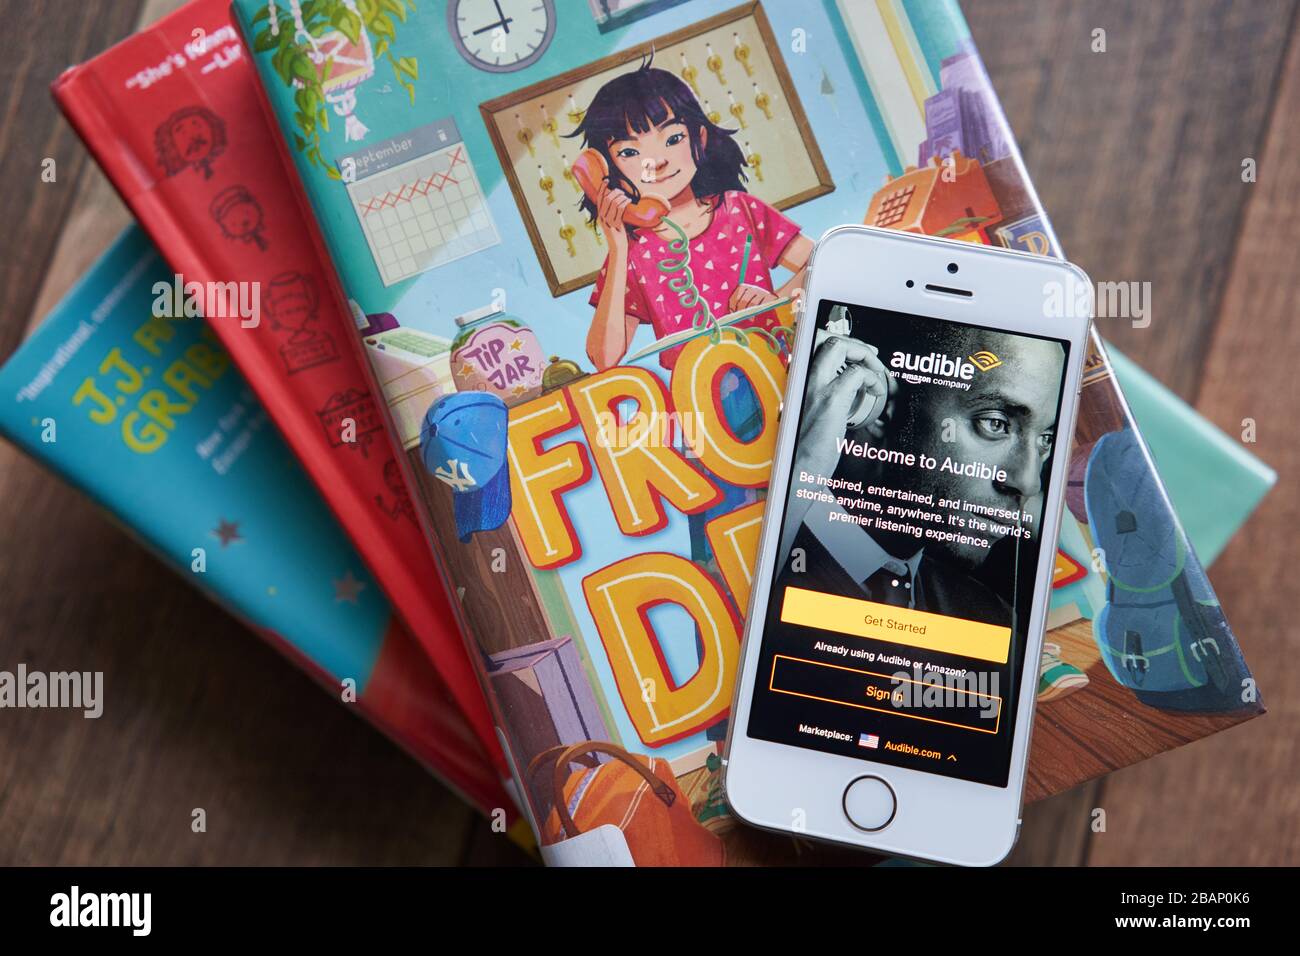 Die Anmeldeseite für die Audible Mobile App wird auf einem Smartphone in den Büchern der Bibliothek angezeigt. Audible, das sich im Besitz von Amazon Inc. Befindet, hat den weltweit größten Katalog von Hörbüchern. Stockfoto